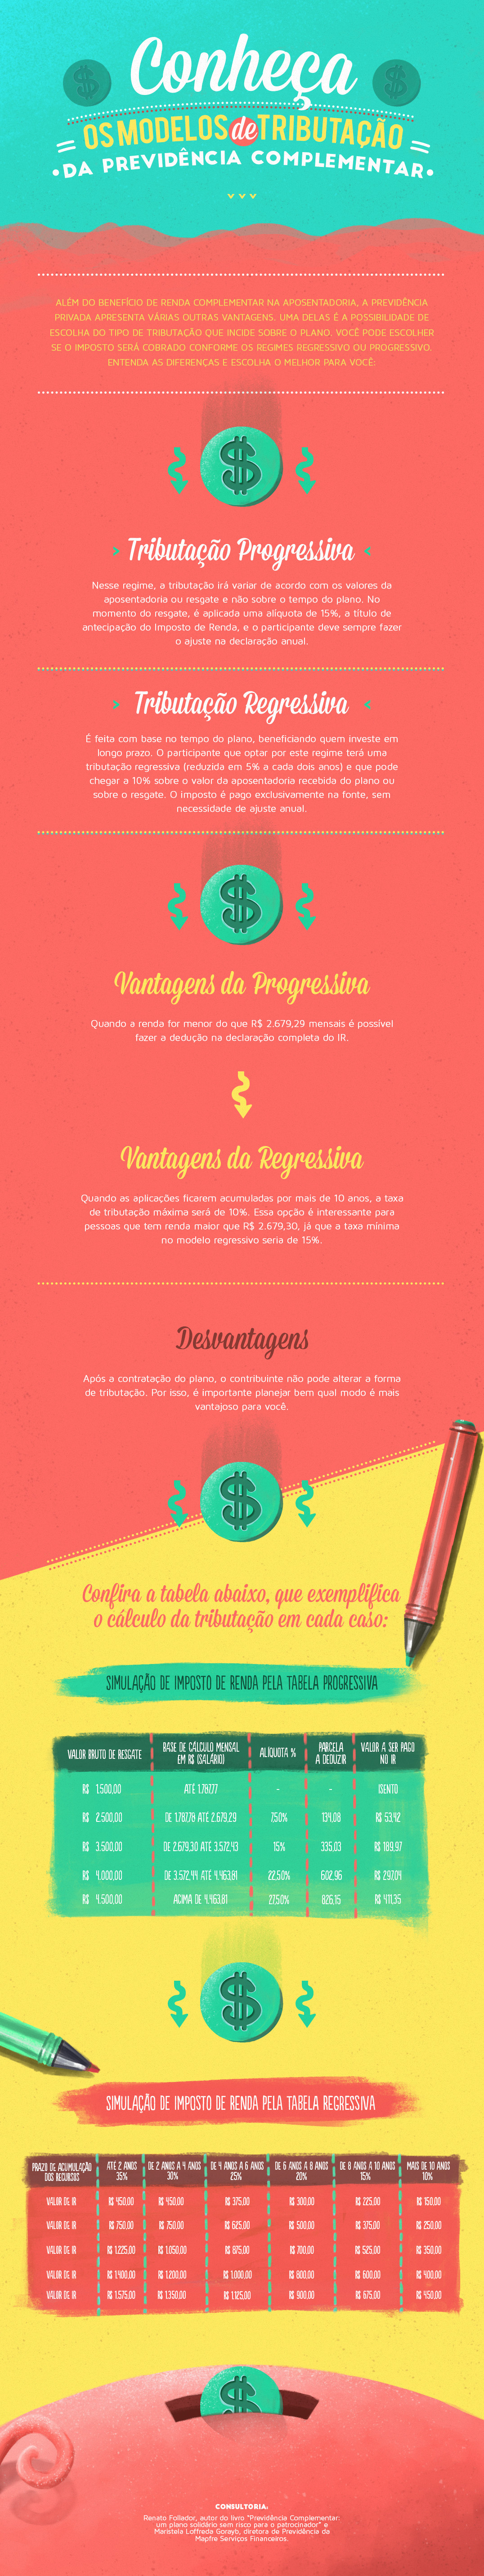 infográficos design business educação financeira finanças previdência plano Fundo de pensão dinheiro money tributos  Tributario Brasil colors infographics